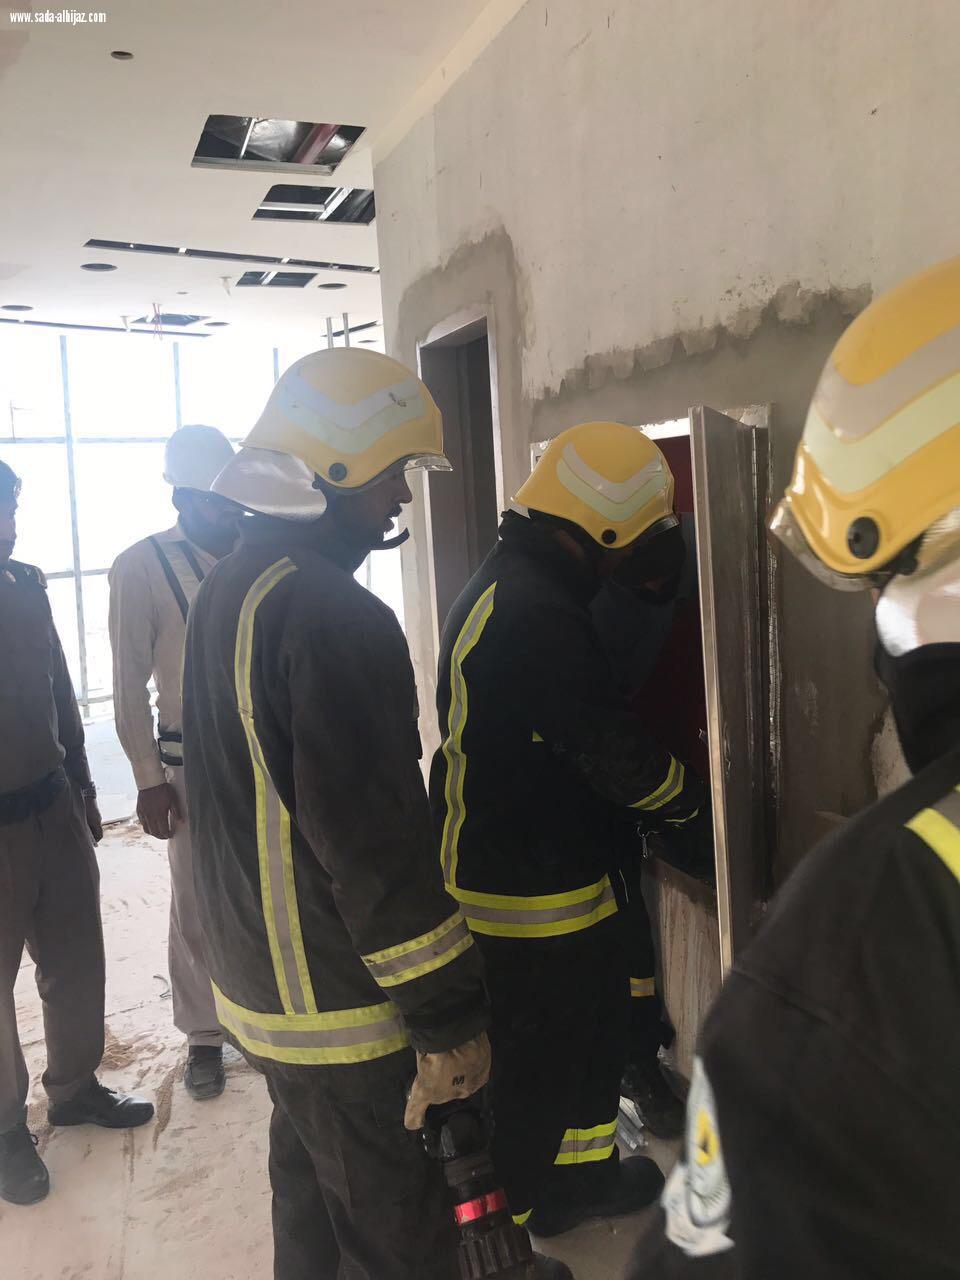 مدني الرياض يغلق 5 مواقع مؤقتا لعدم توافر متطلبات واشتراطات السلامة والحماية من الحريق . 